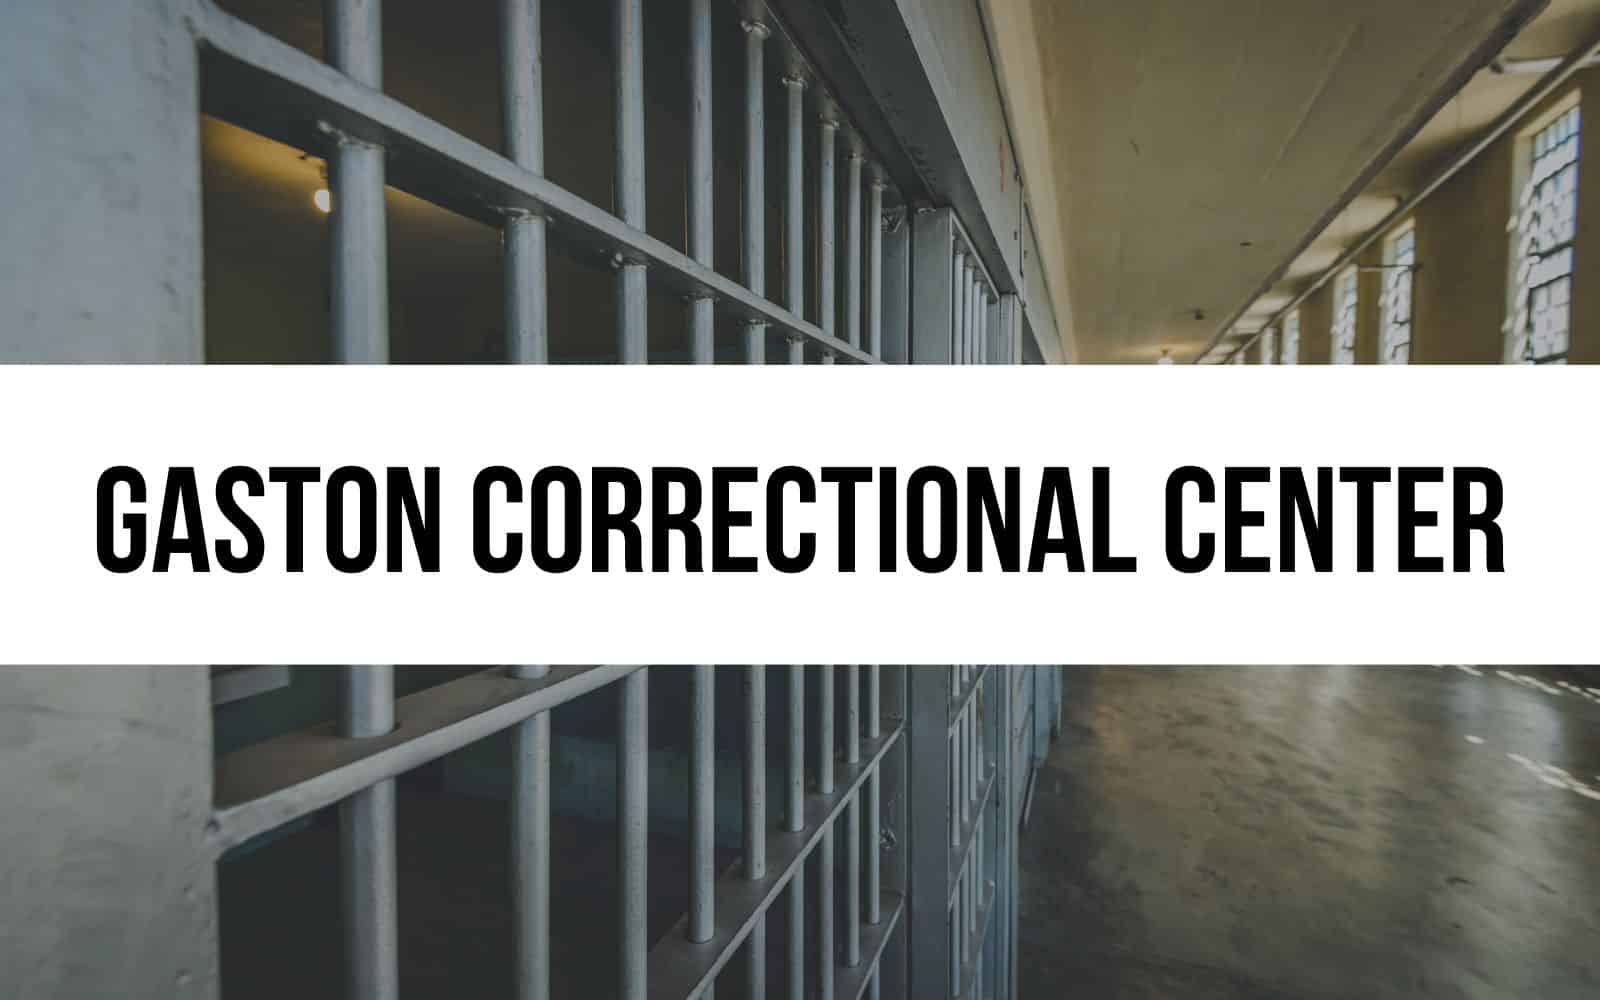 Gaston Correctional Center